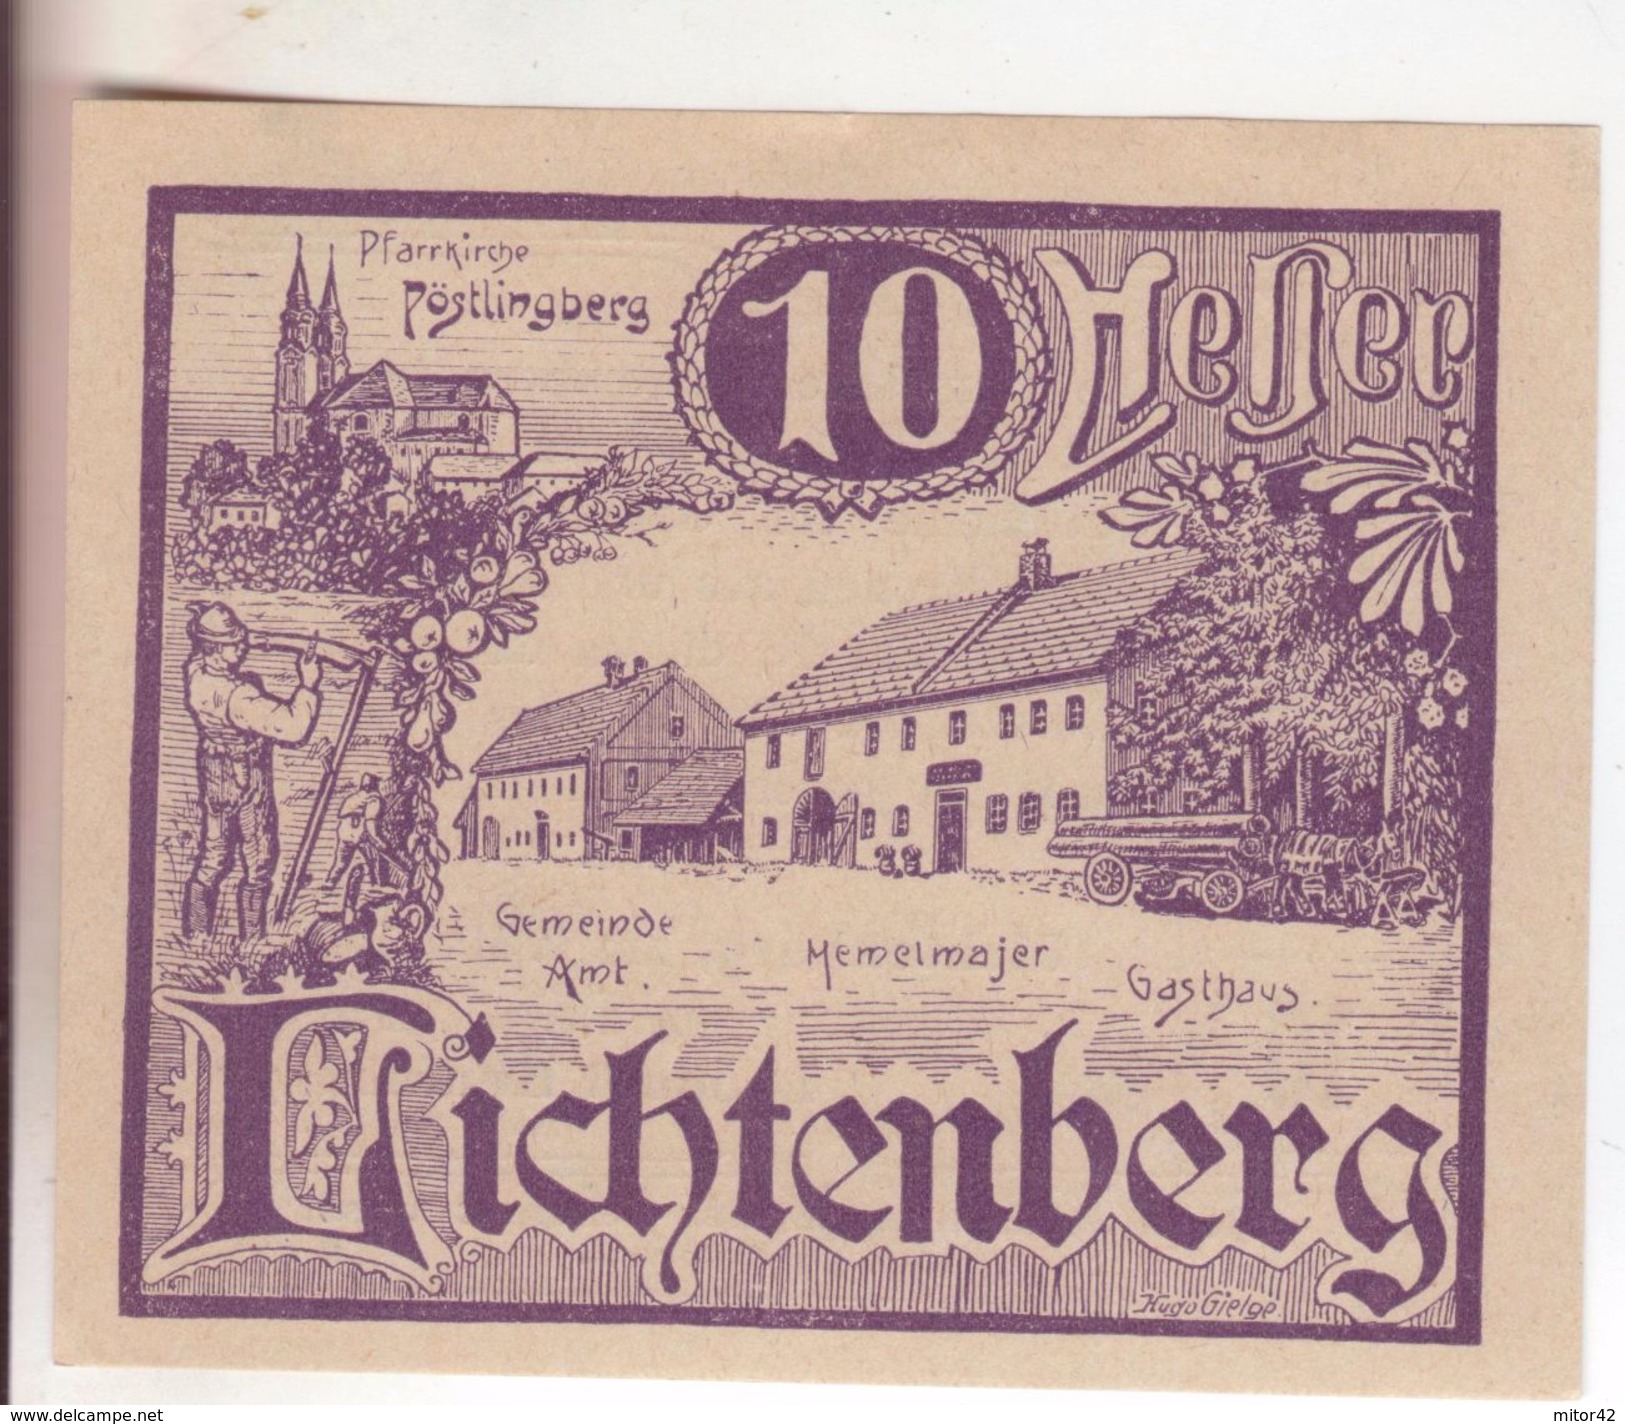 105-Banconote-Carta Moneta Di Emergenza-NOTGELD-Austria-Osterraich-Emergency Money-10 Heller-1920 - Austria